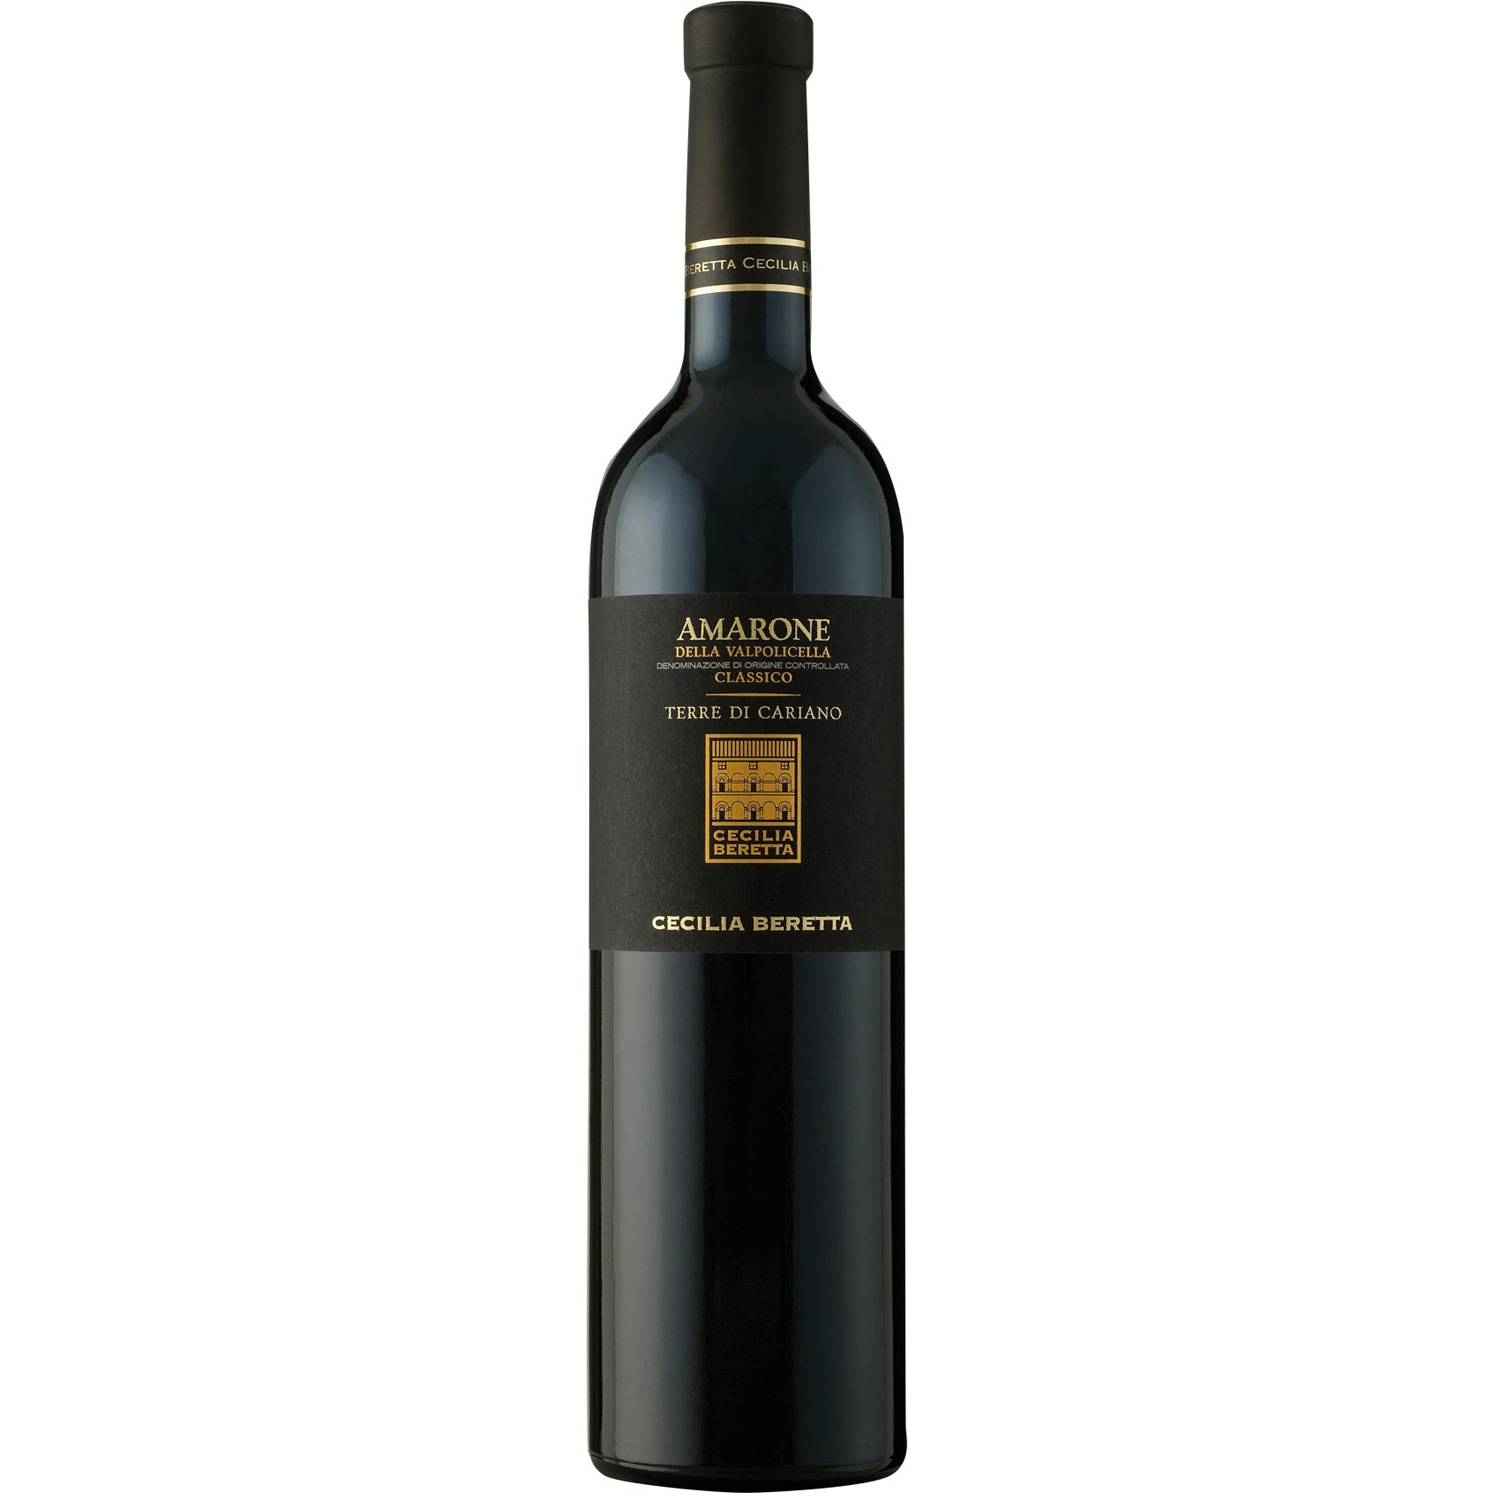 Italienischer Rotwein Amarone della Valpolicella Classico Terre di Cariano Riserva 2013